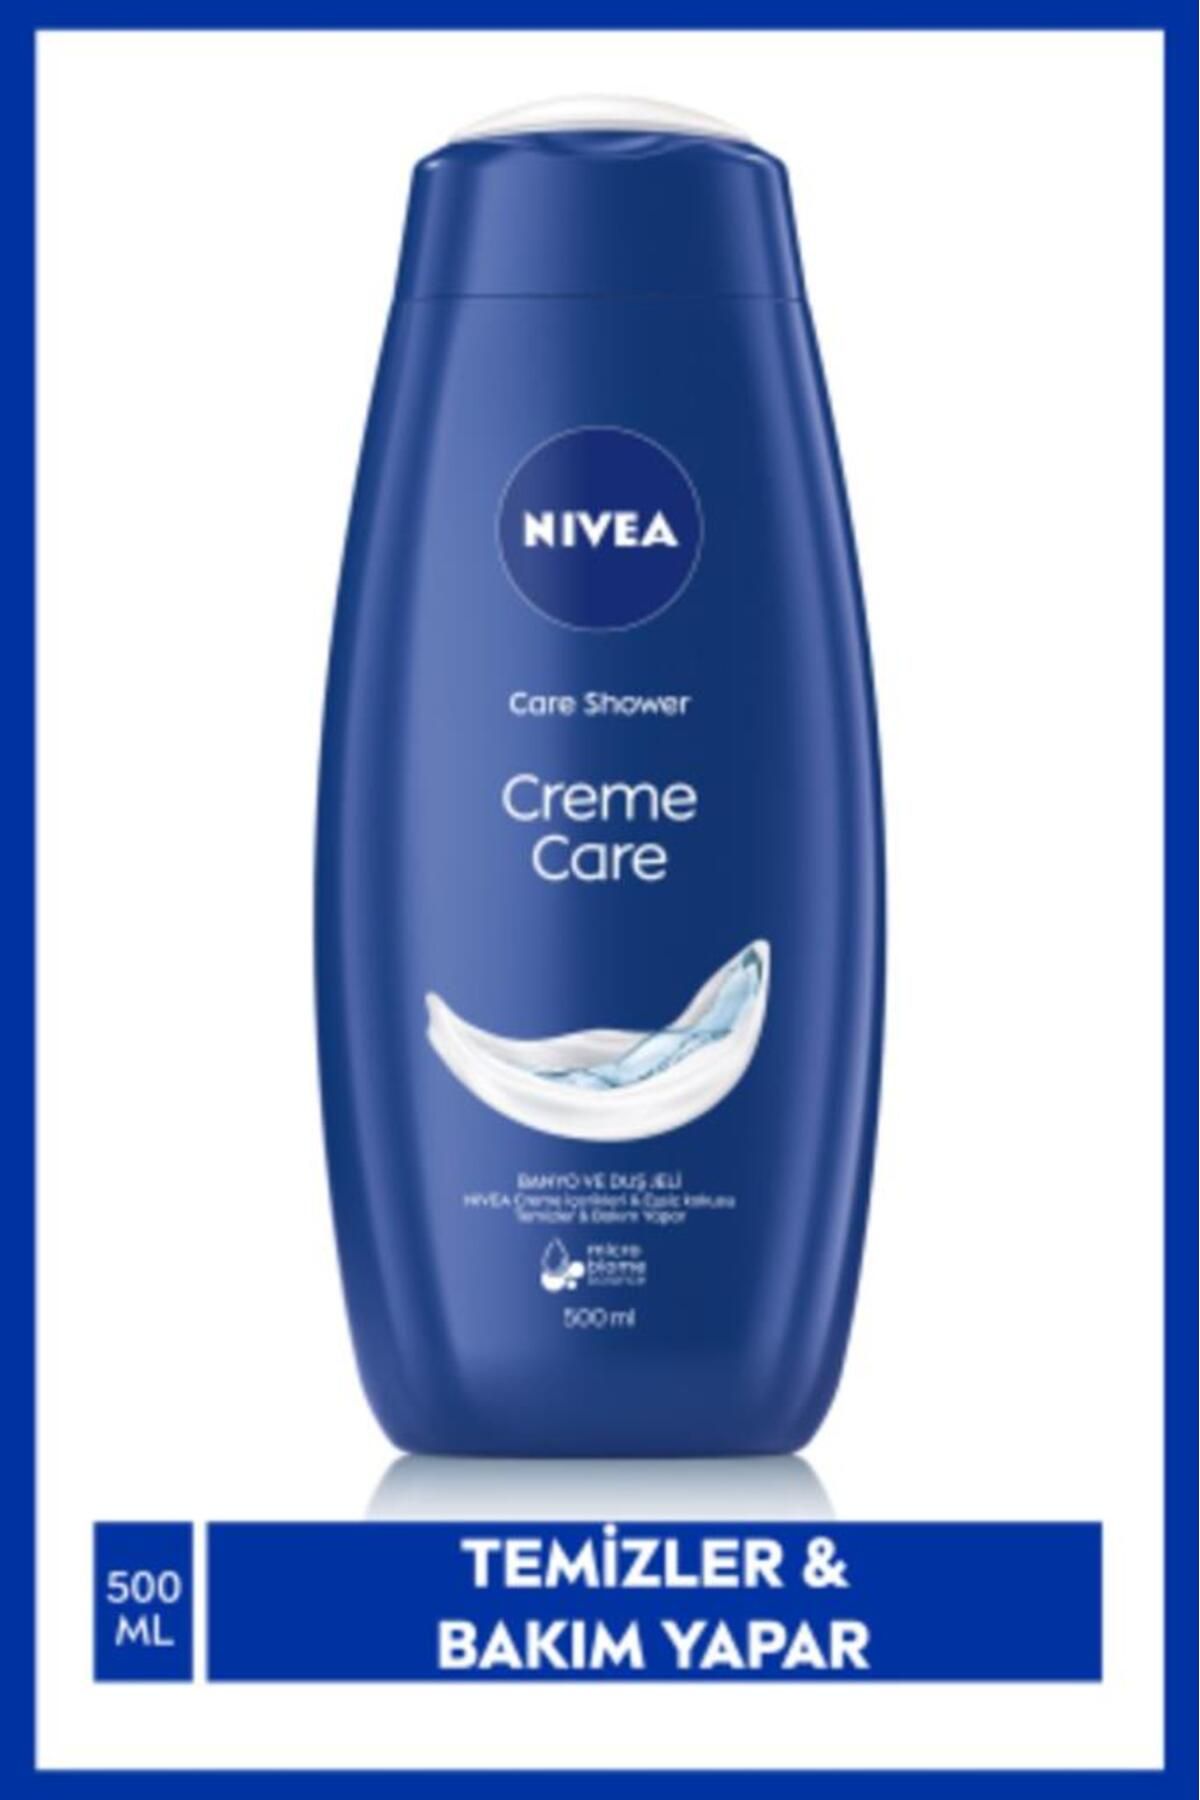 NIVEA Banyo Ve Duş Jeli Creme Care 500ml, Temizlerken Bakım Yapar, Yoğun Vücut Nemlendirici, Eşsiz Koku